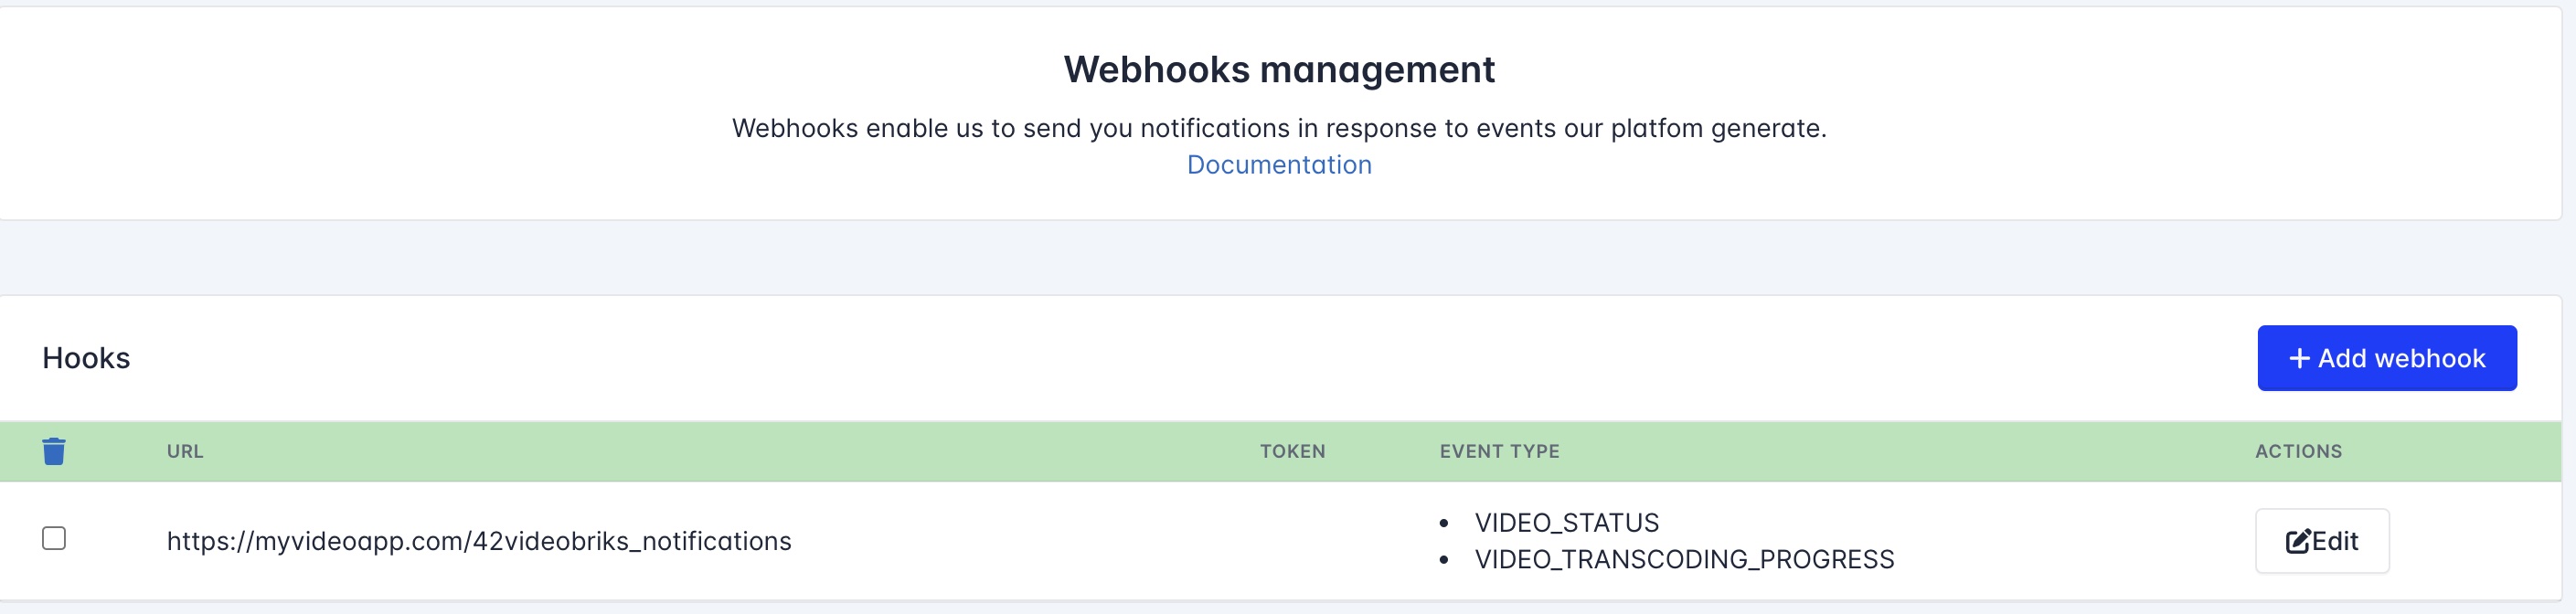 Webhooks management